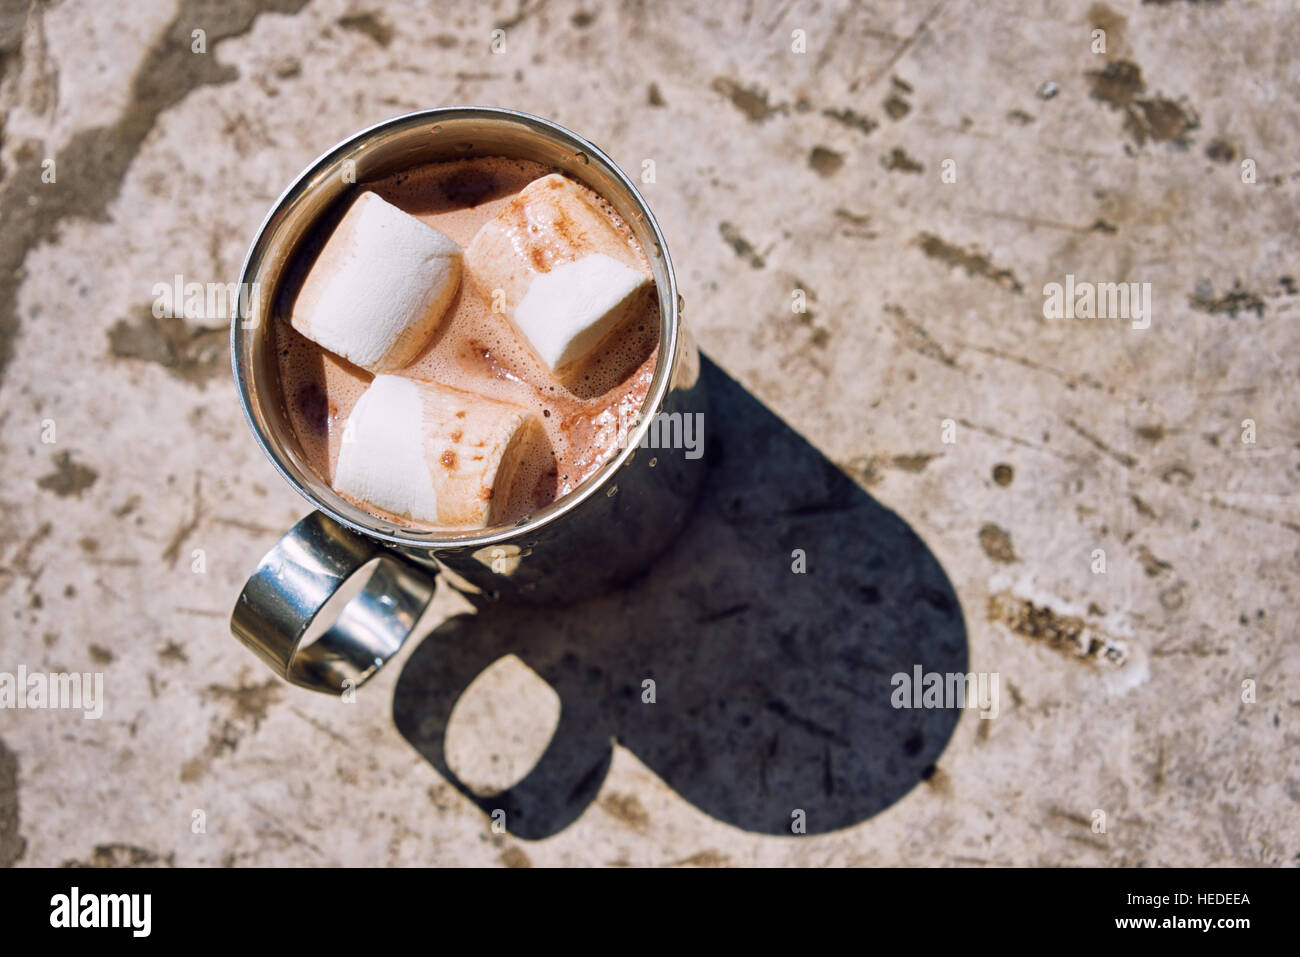 Metall touristische Tasse Kakao mit Marshmallow auf einem Stein Hintergrund im freien Stockfoto